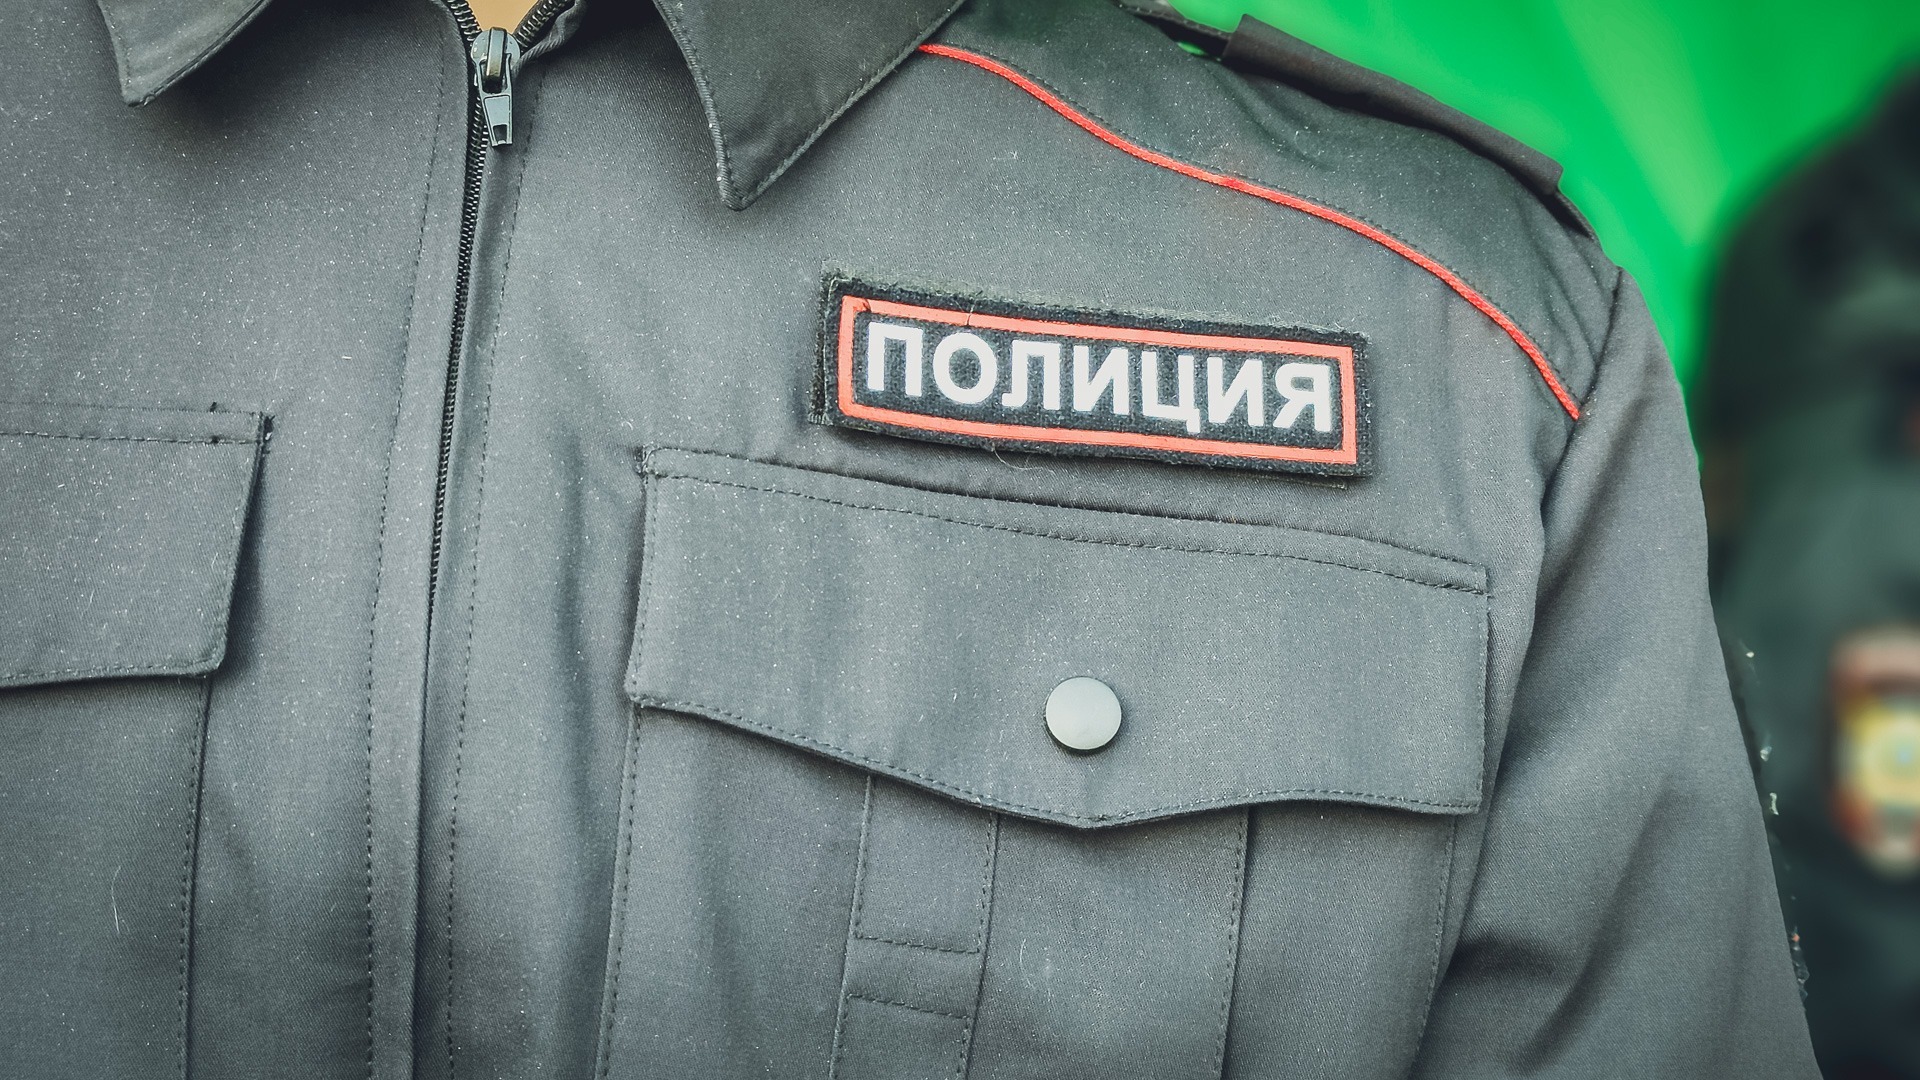 Во Владивостоке в школах пришлось дежурить сотрудникам полиции